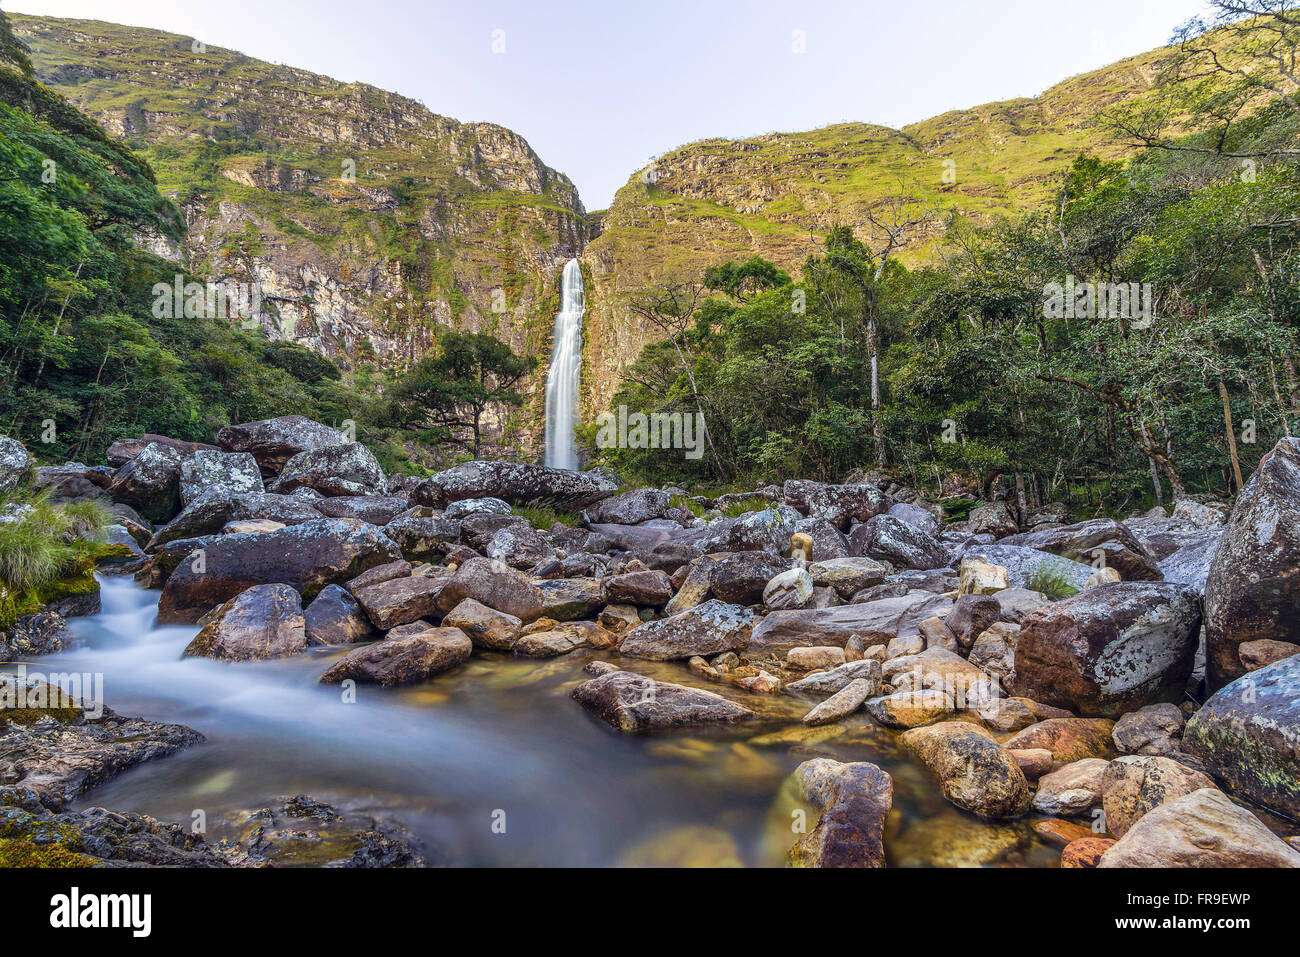 Casca D`Anta waterfall of Rio Sao Francisco in the escarpments of the Serra da Canastra National Park Stock Photo